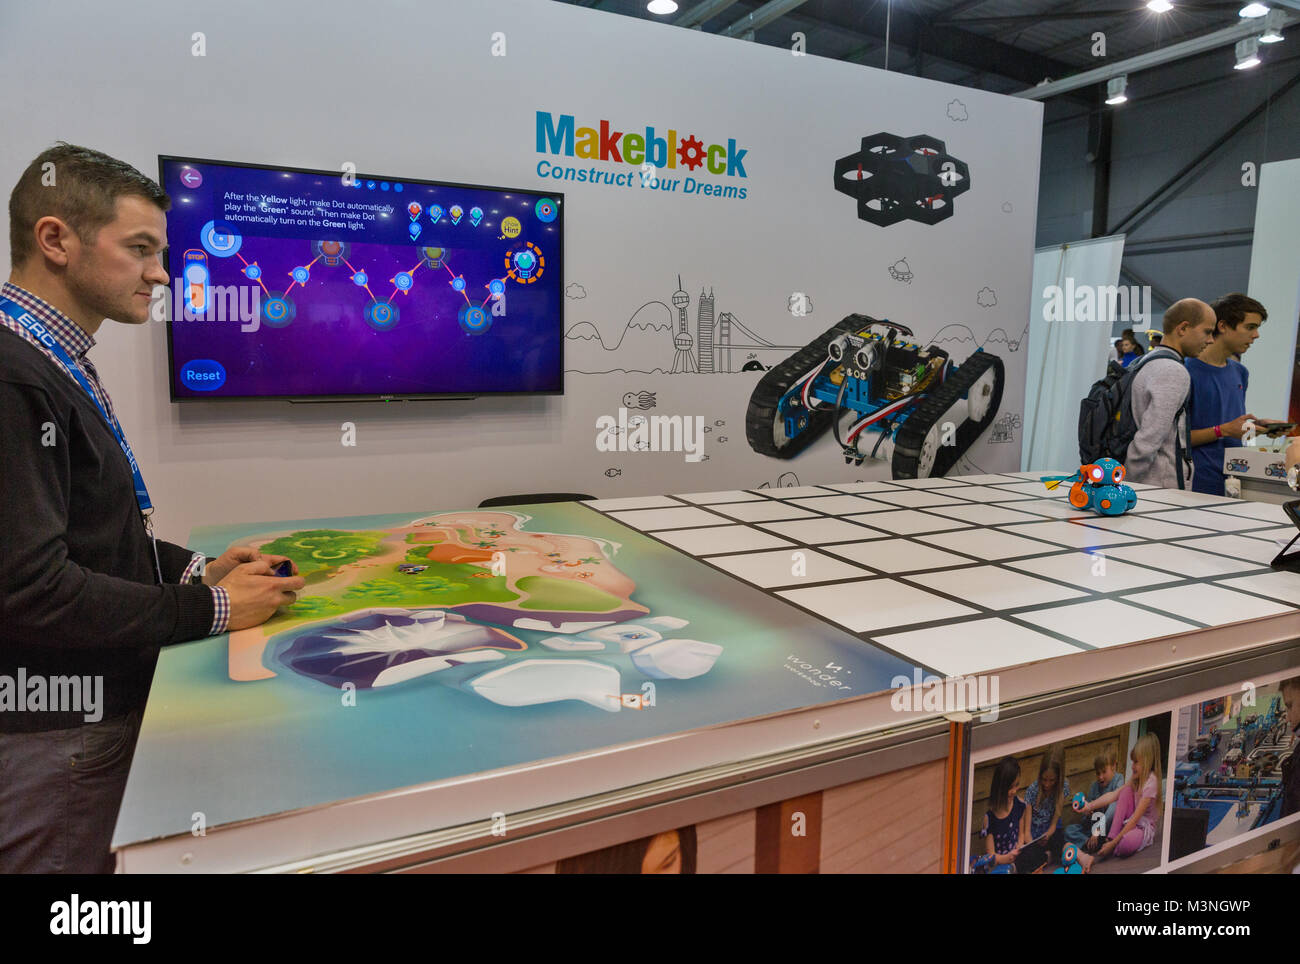 KIEV, UCRAINA - 07 ottobre 2017: la gente visita Makeblock, marchio cinese di robot giocattoli da costruzione presso lo stand durante la CEE 2017, il maggiore consumatore elec Foto Stock